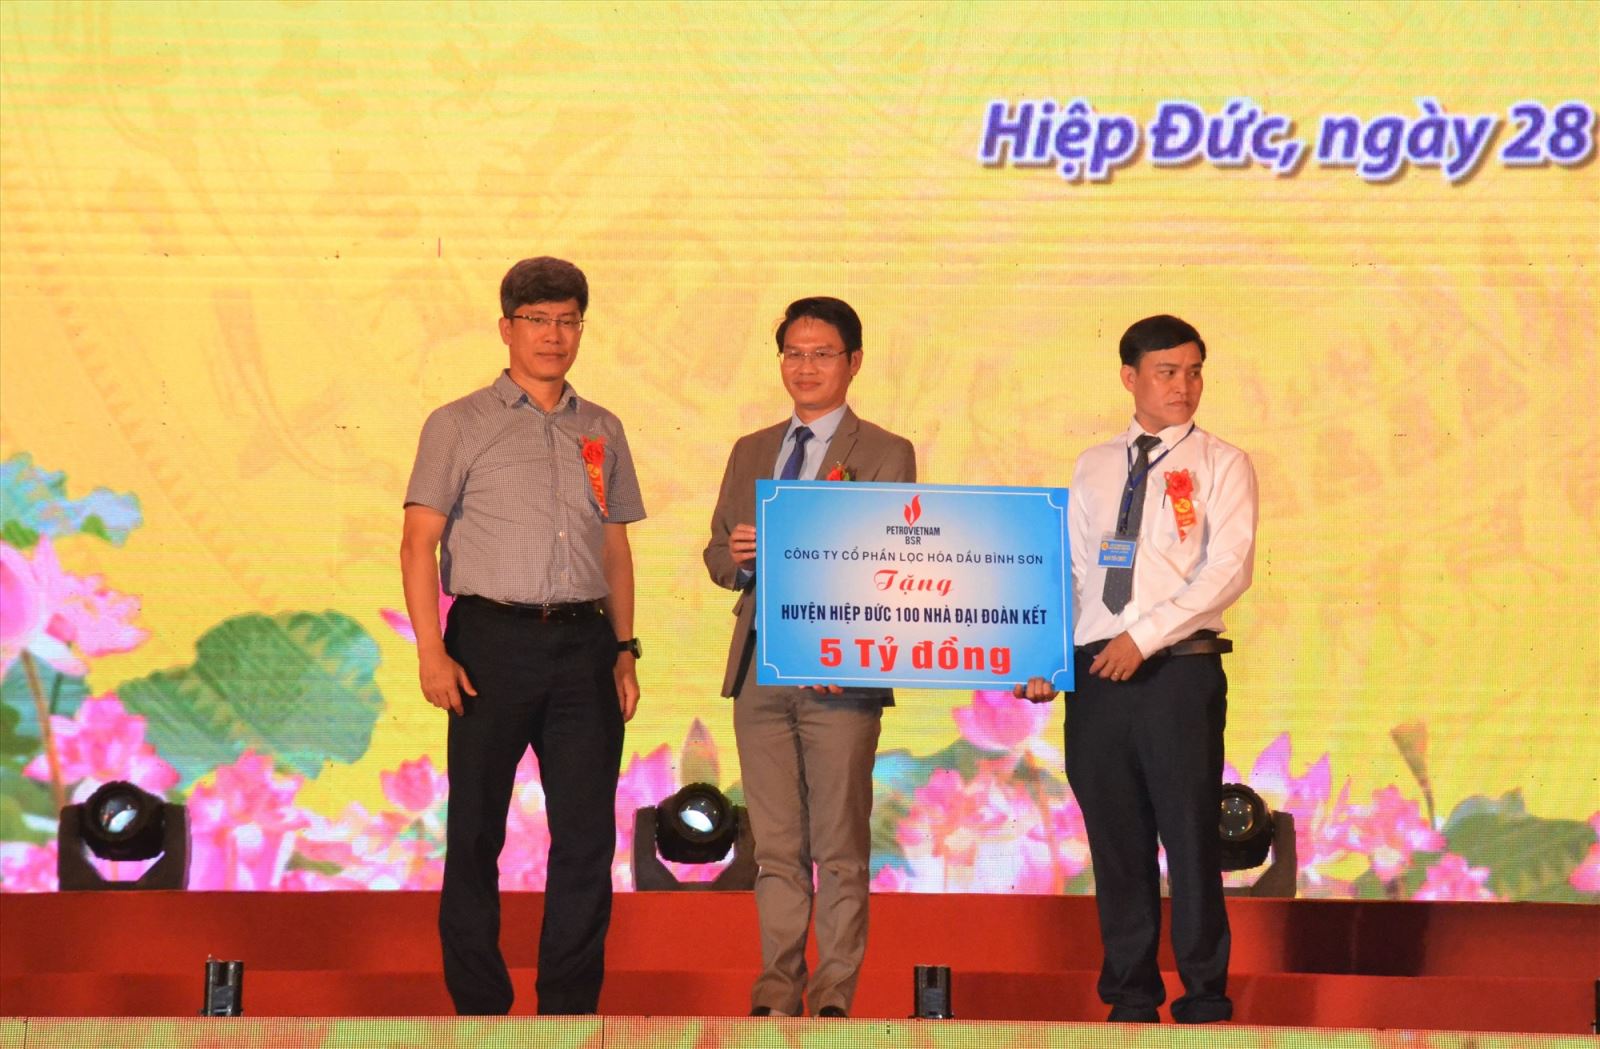 BSR tài trợ huyện Hiệp Đức, tỉnh Quảng Nam 5 tỷ đồng xây dựng 100 Nhà đại đoàn kết